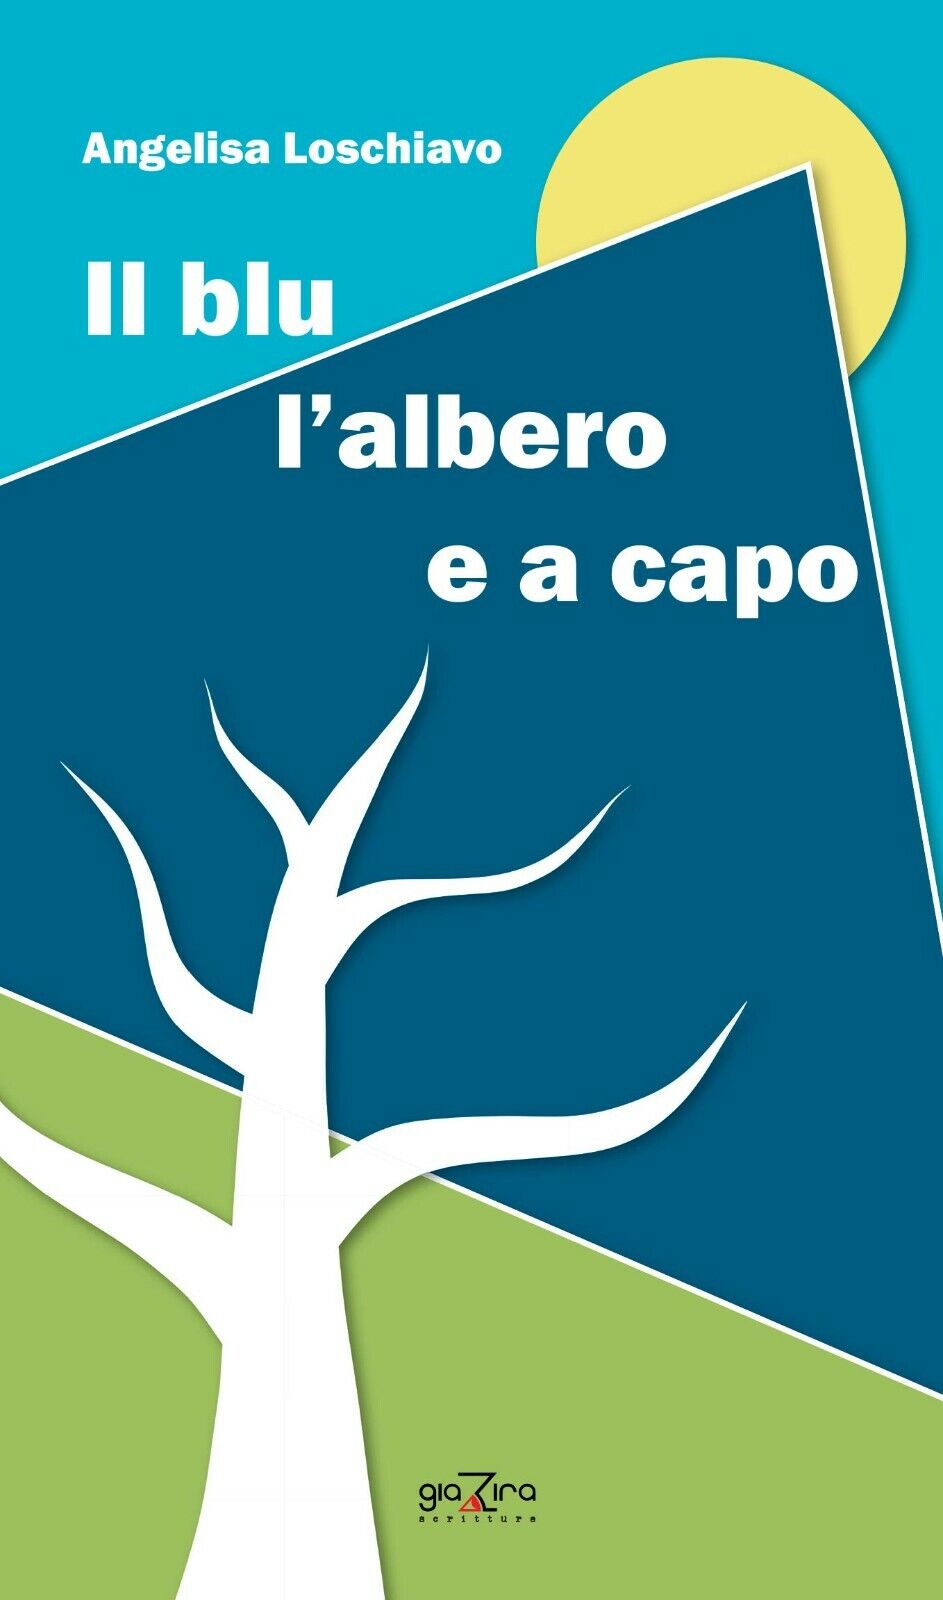 Il blu L'albero e a capo - Angelisa Loschiavo - Giazira - 2020